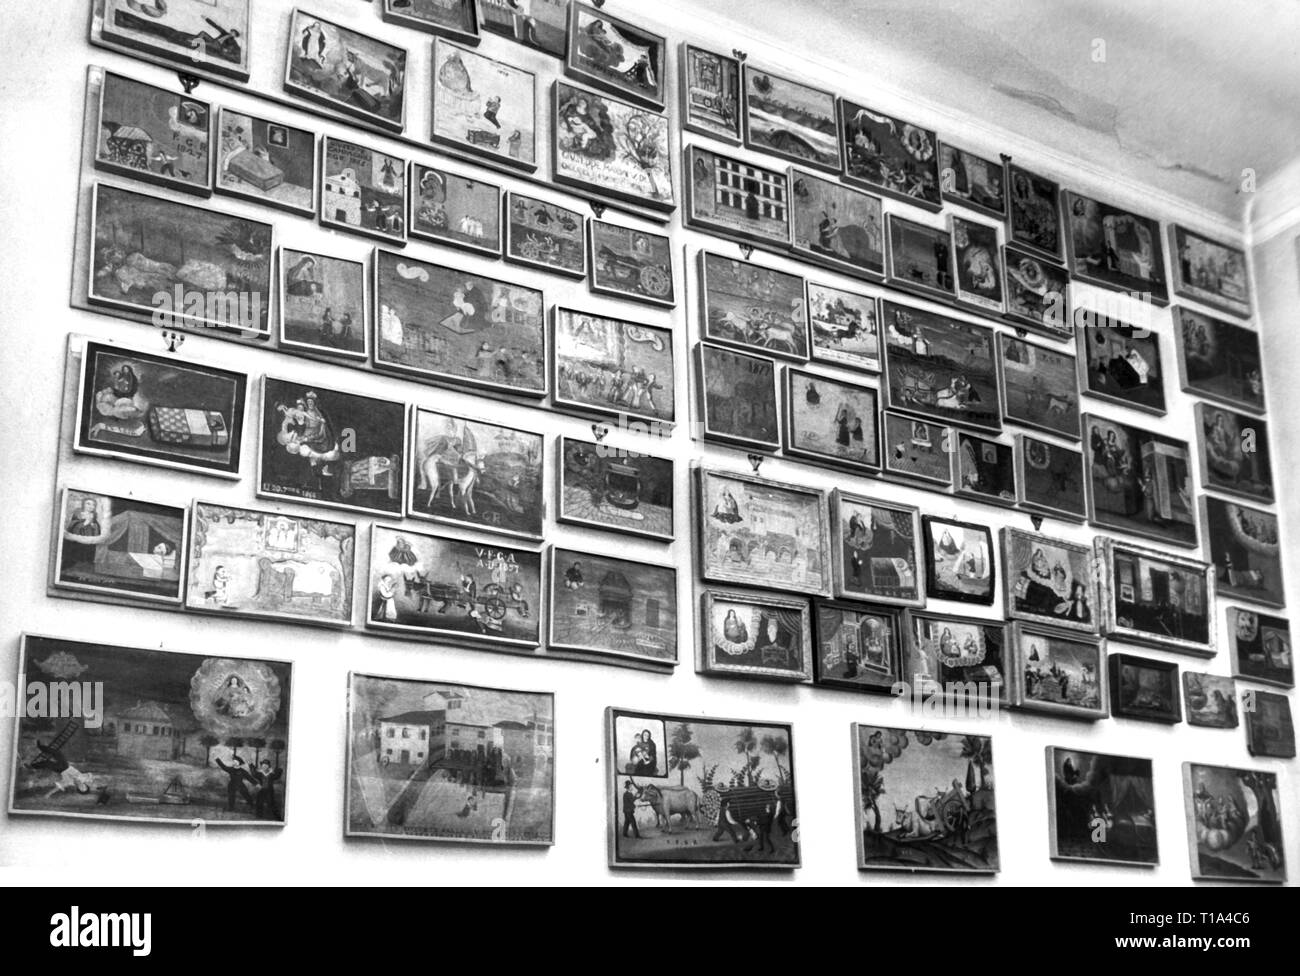 Religion, Votivbildern, Stücke der Sammlung von Ermanno Mori spanning über 1000 Bilder, Mailand, Februar 1964, Additional-Rights - Clearance-Info - Not-Available Stockfoto